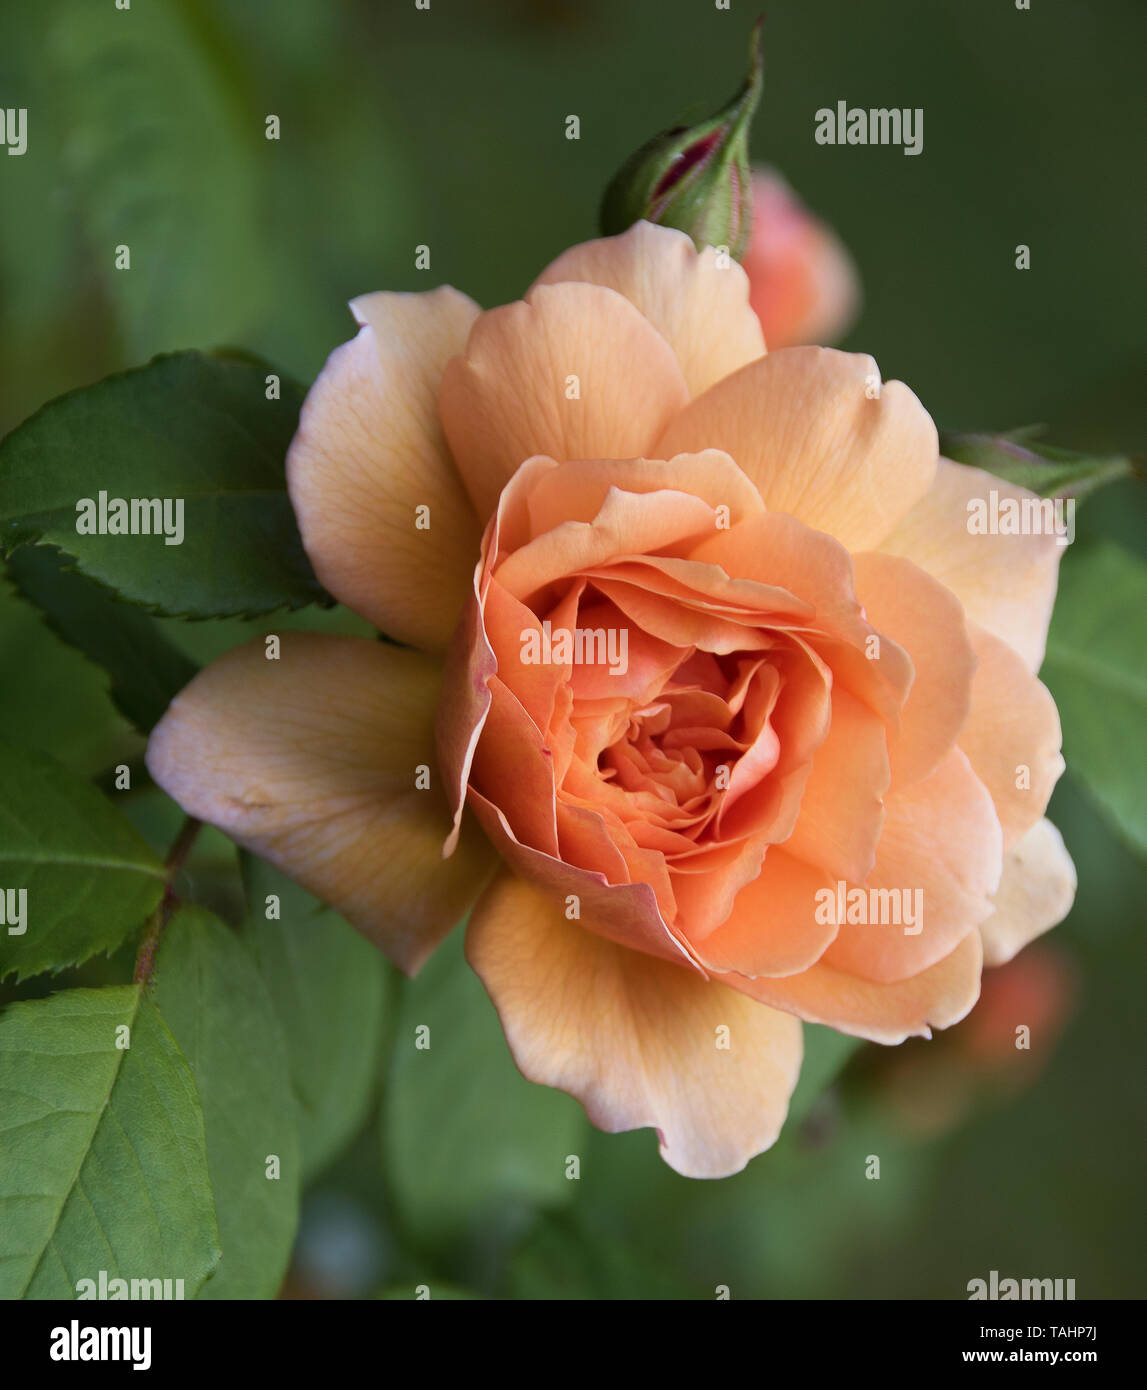 Rosa "Gnade" hat eine schöne reine Aprikosen Blumen - in der Mitte dunkler, heller an den Kanten. Sie sind perfekte Rosetten mit Zurückgebogen äusseren Blütenblätter ein Stockfoto